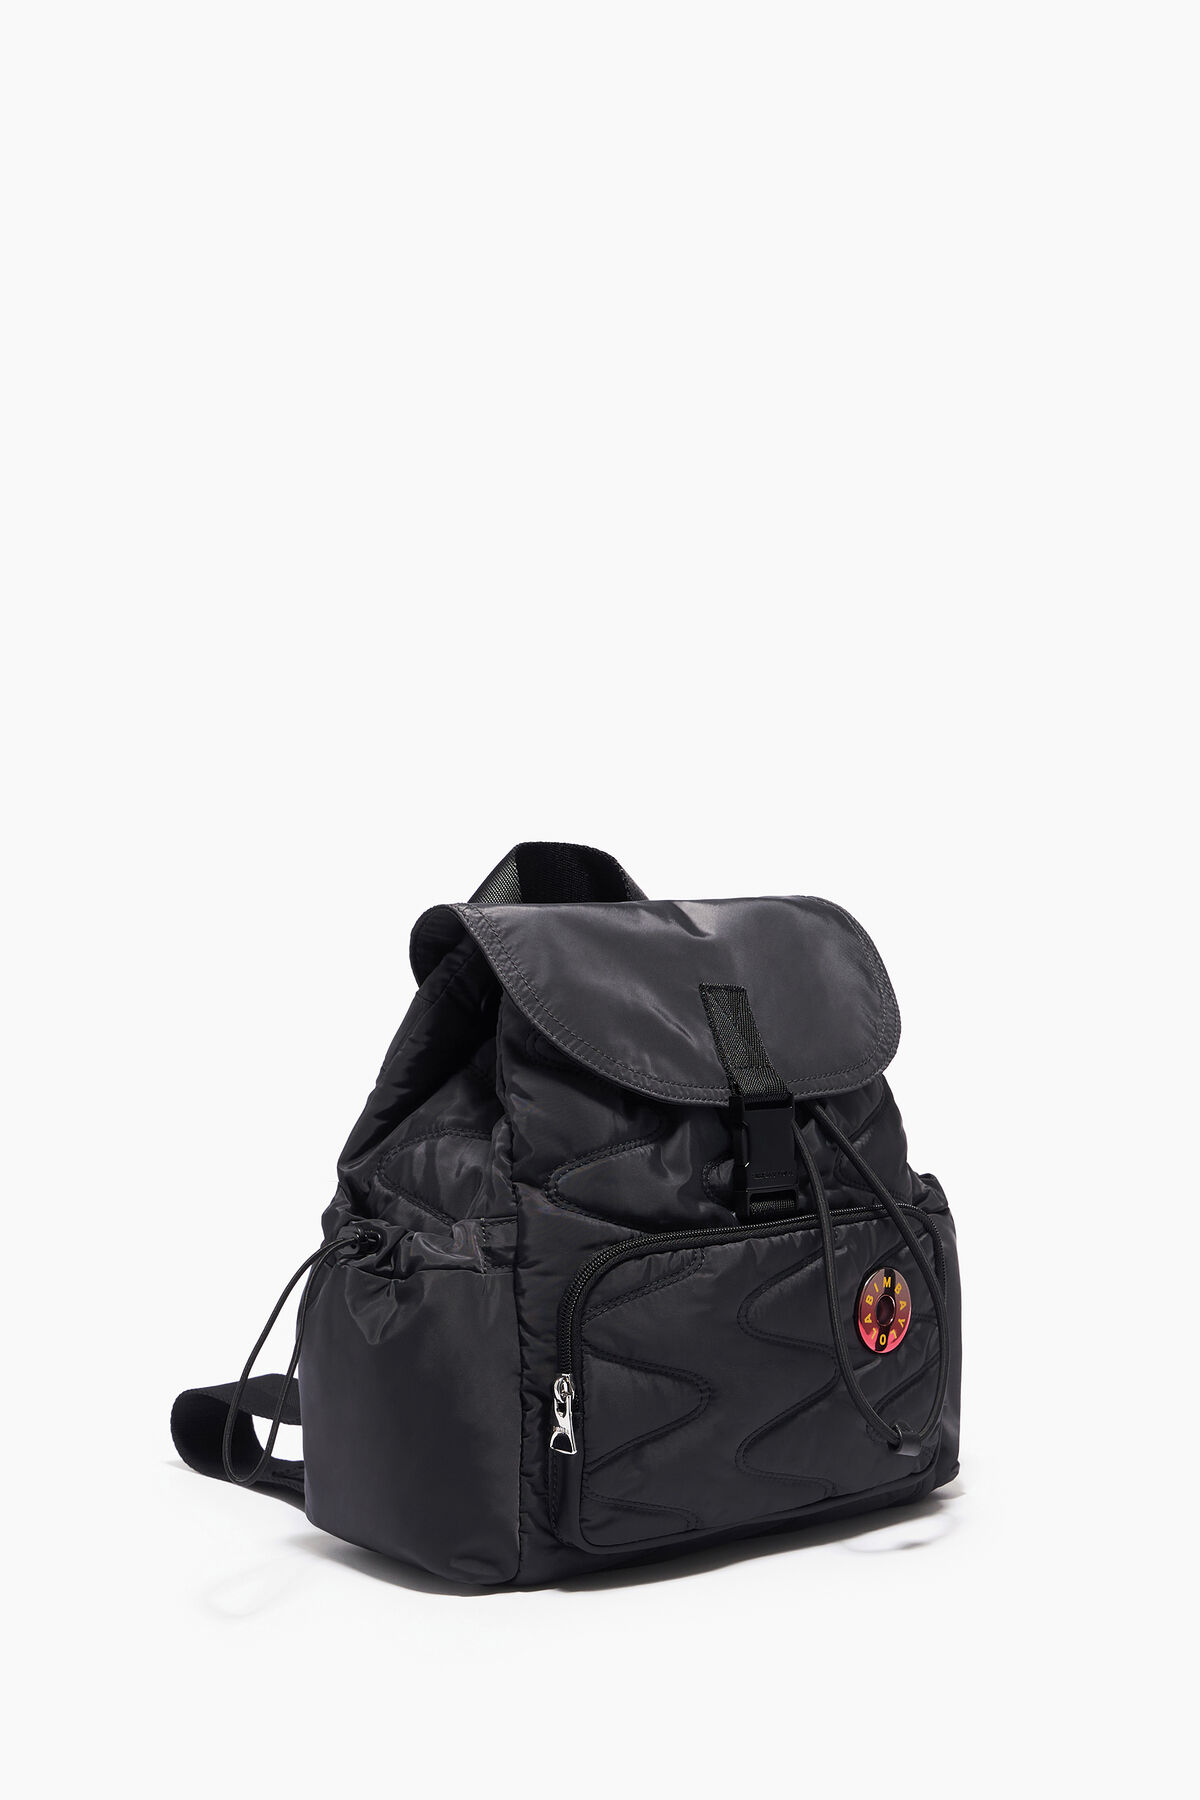 M nylon backpack